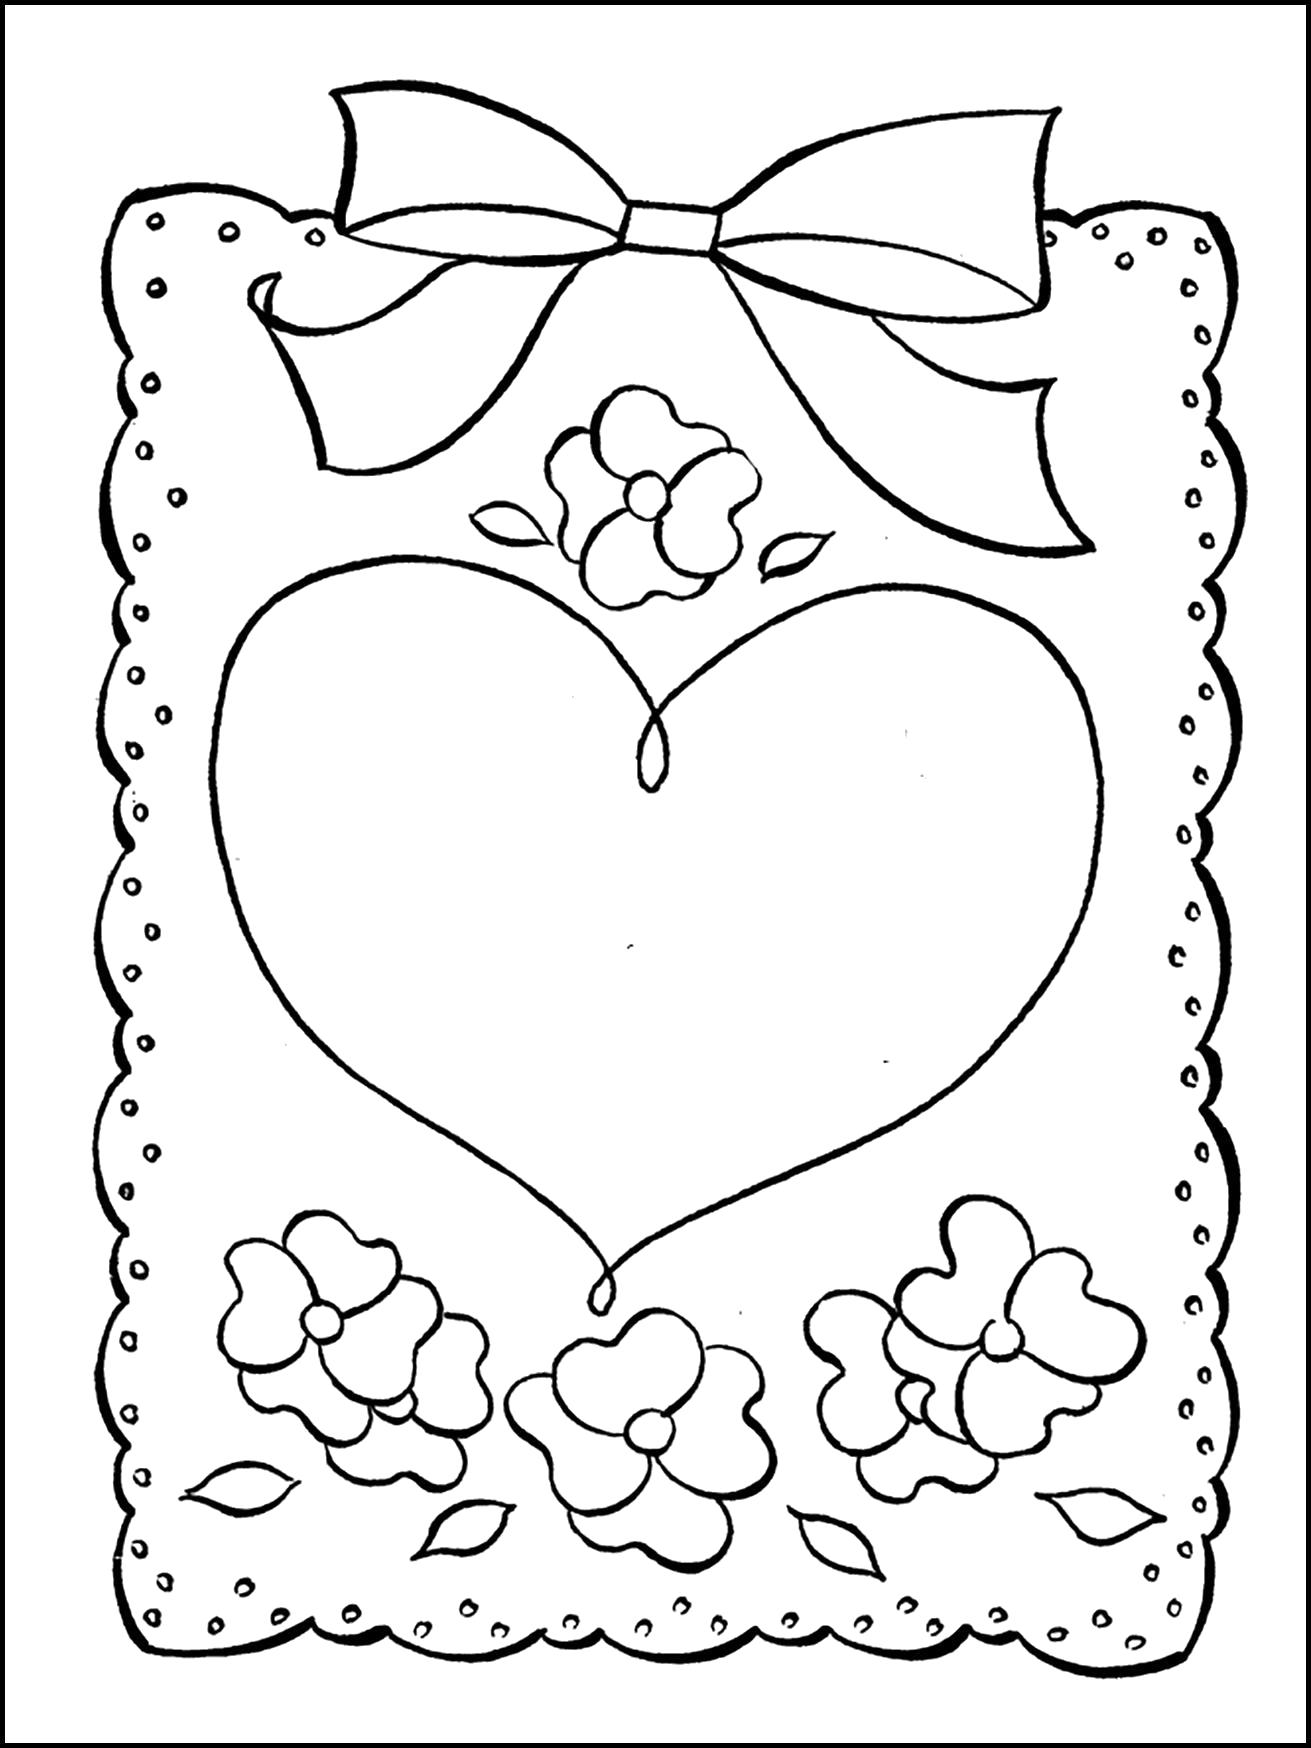 Название: Раскраска Раскраска открытка с сердечком. Категория: День святого валентина. Теги: сердце.